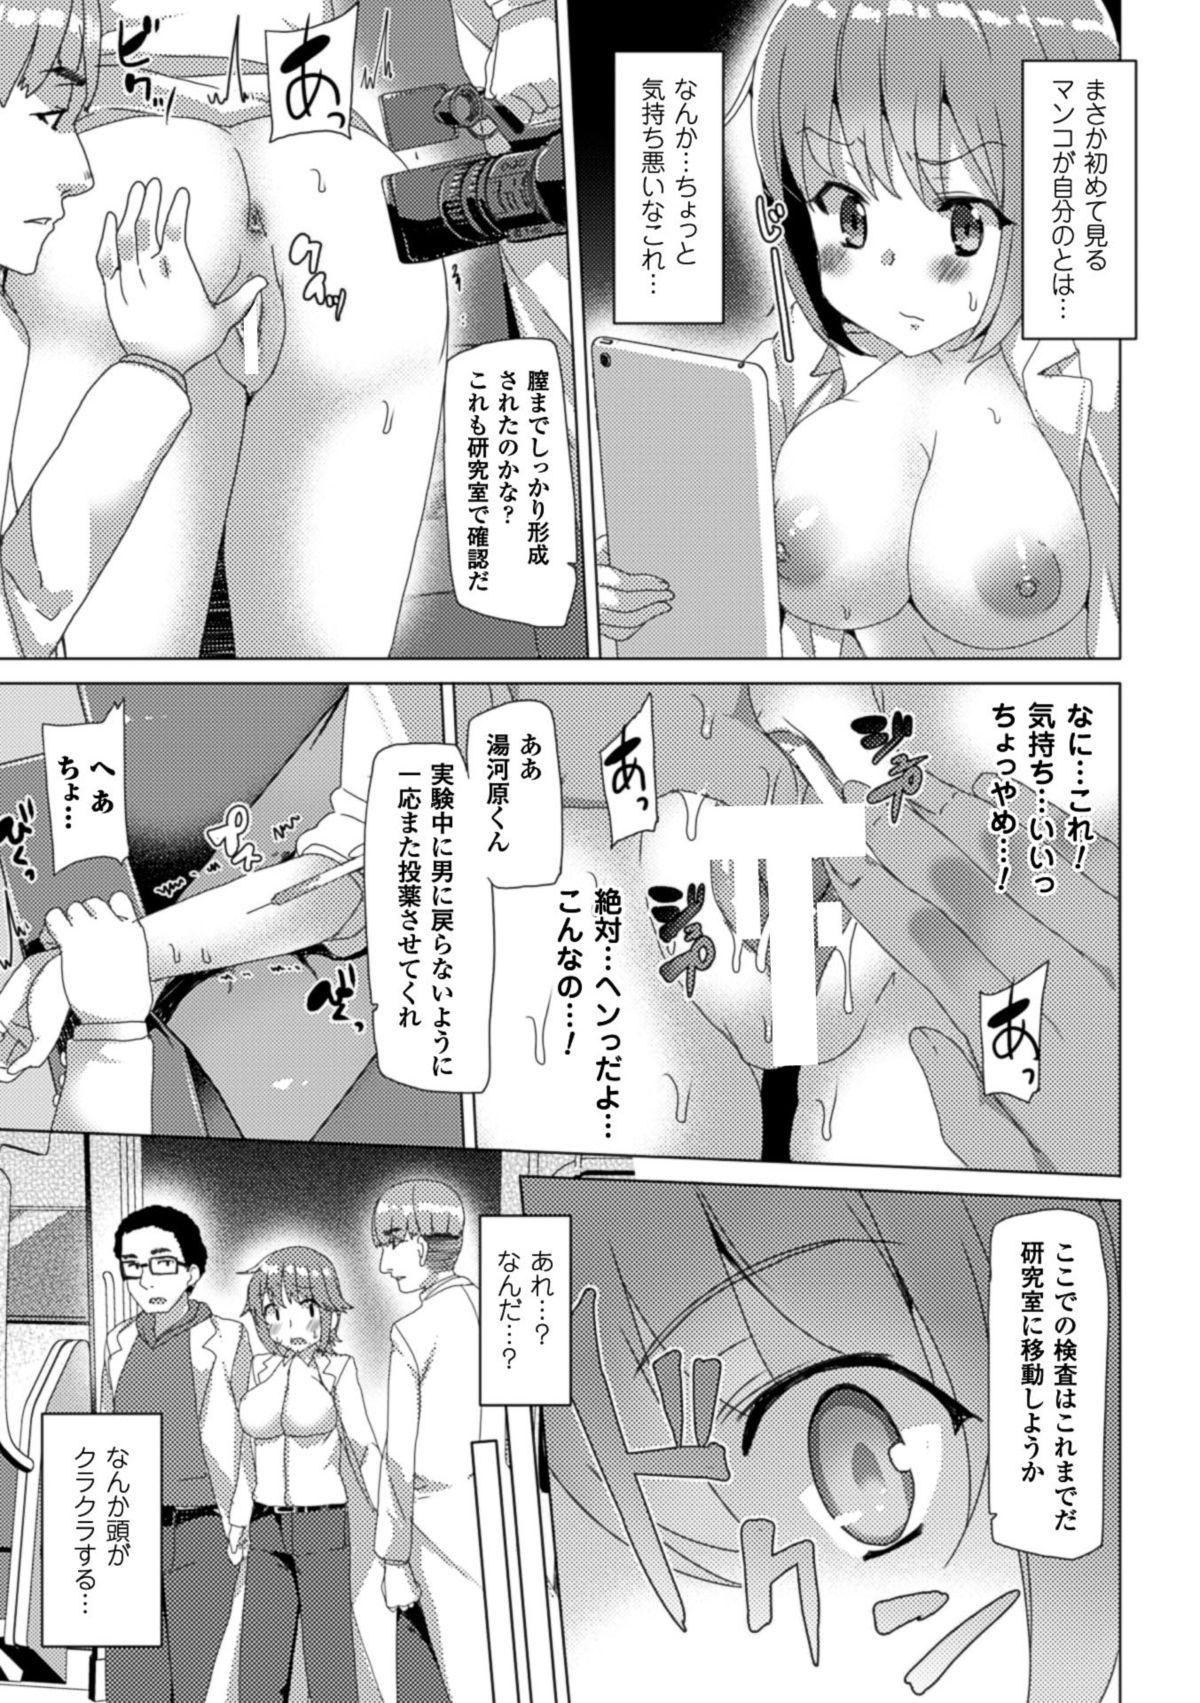 Bessatsu Comic Unreal Nyotaika H wa Tomerarenai Digital Ban Vol. 1 76